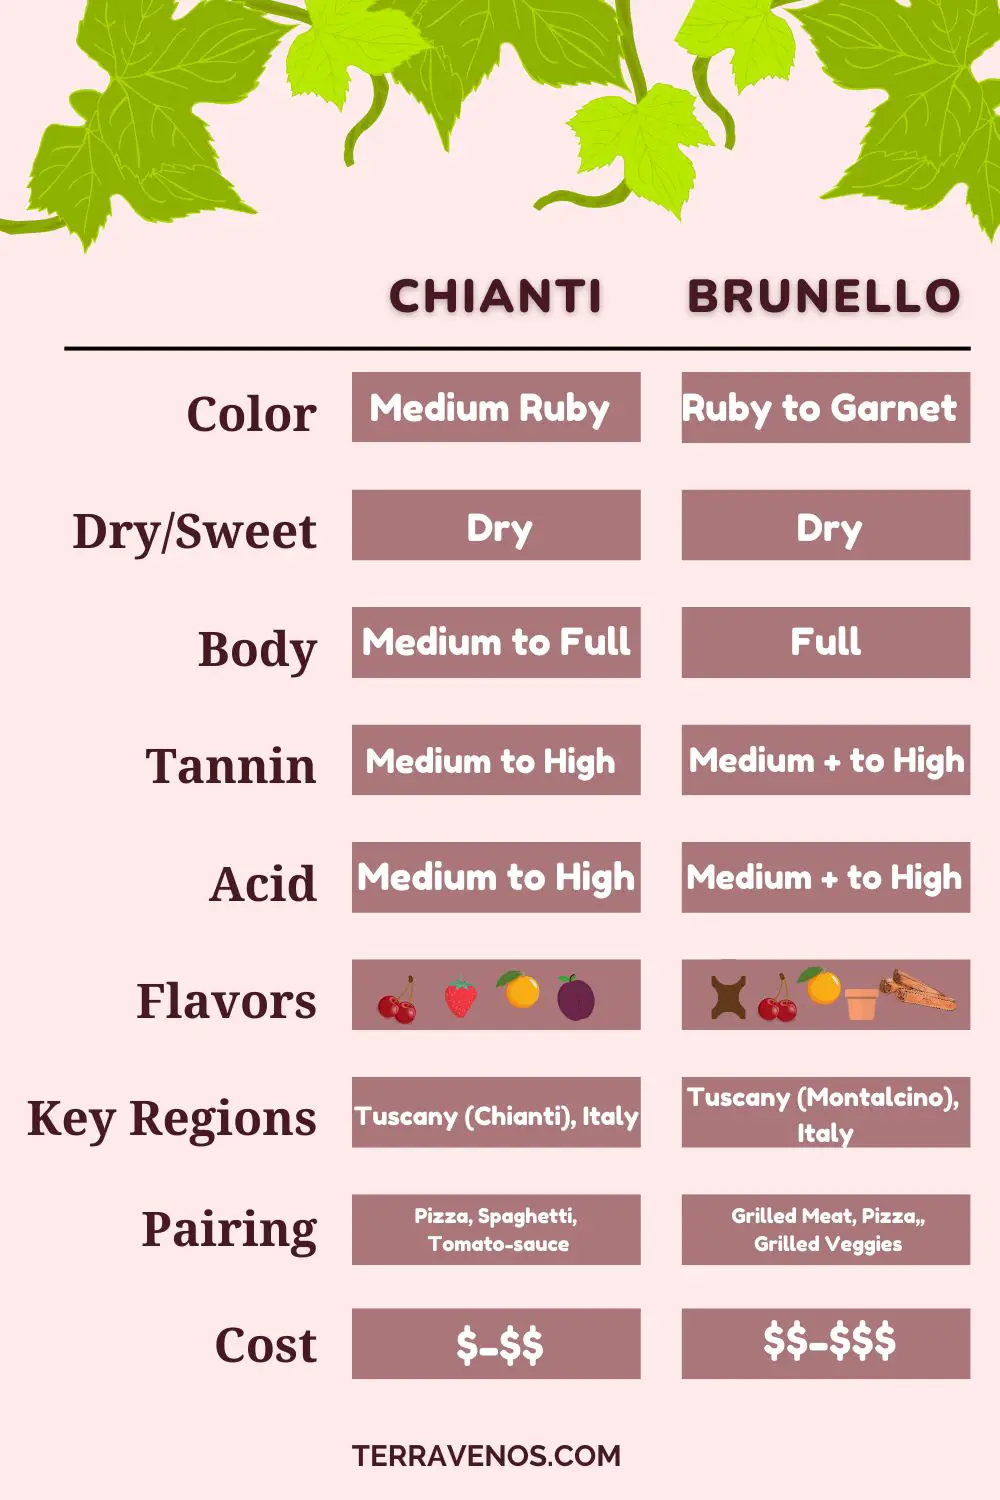 brunello-vs-chianti-chart-comparison